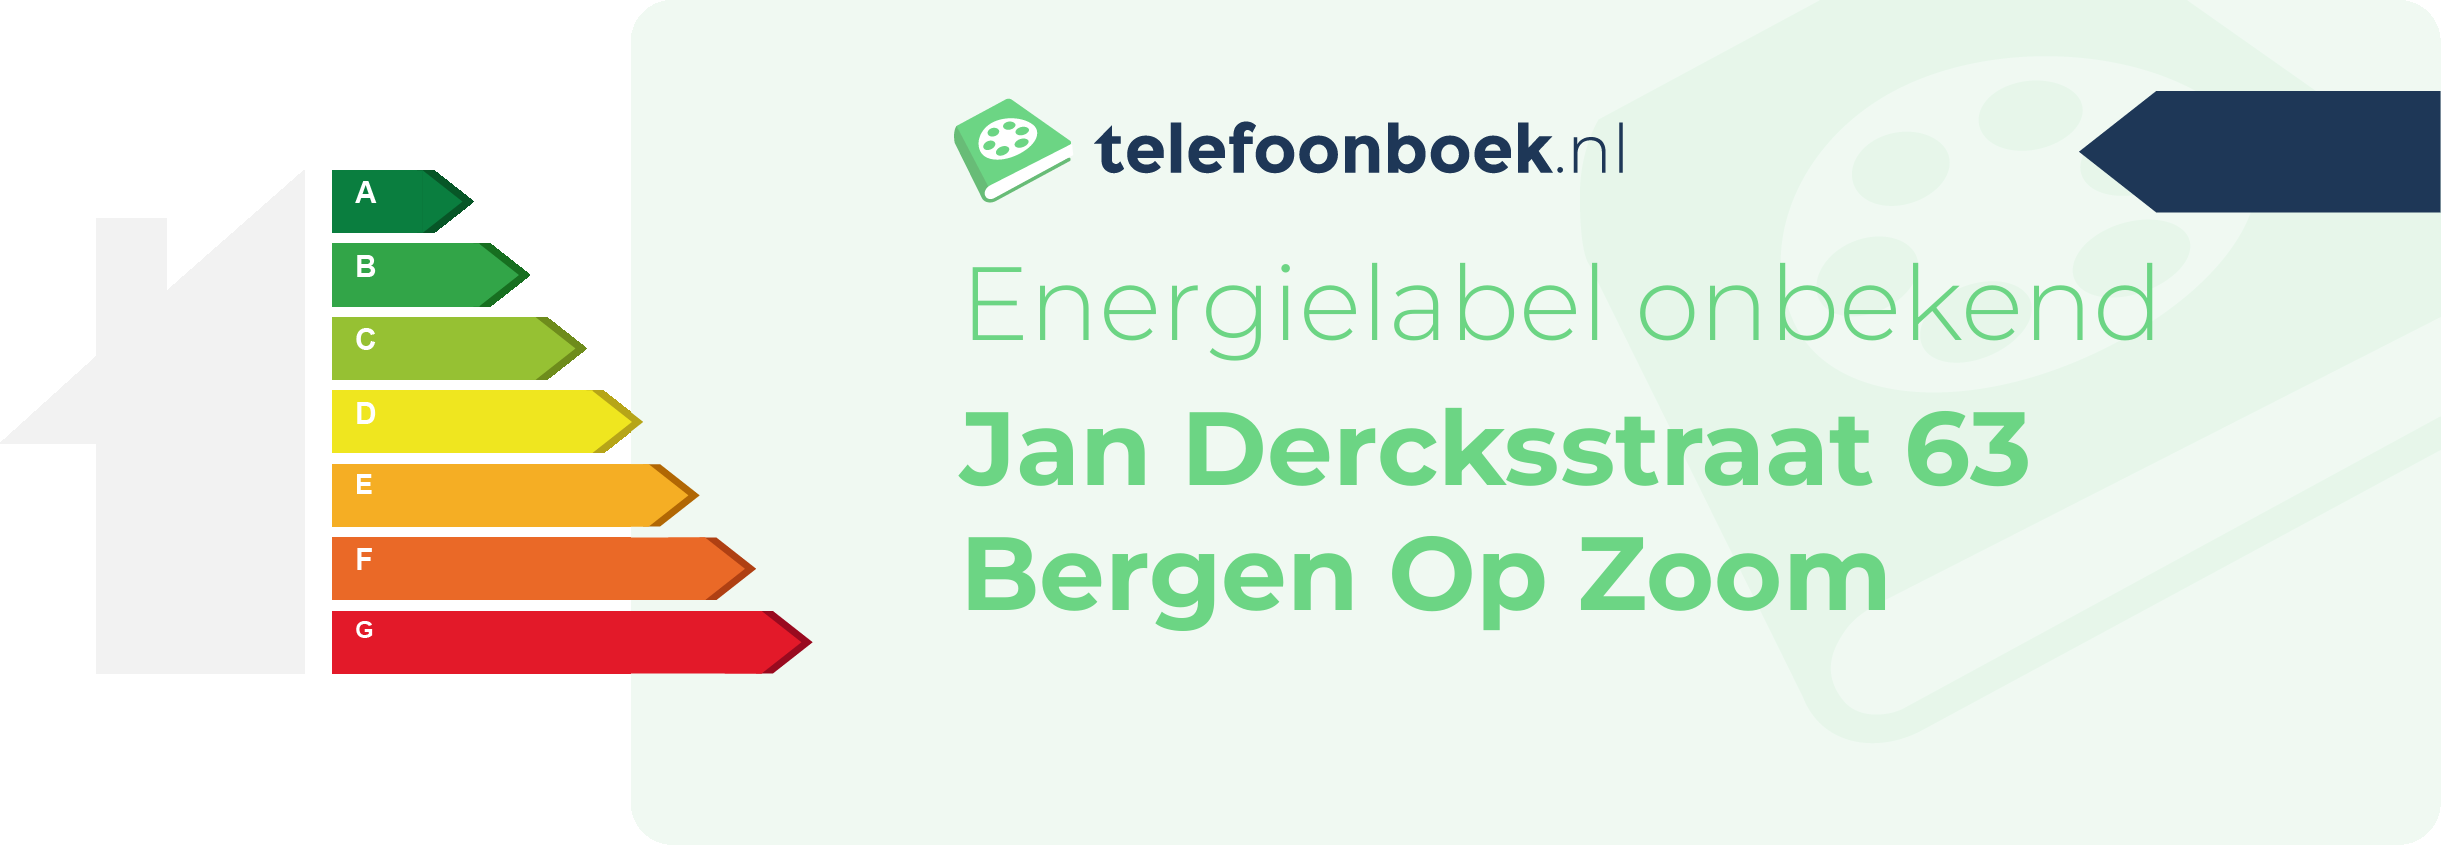 Energielabel Jan Dercksstraat 63 Bergen Op Zoom